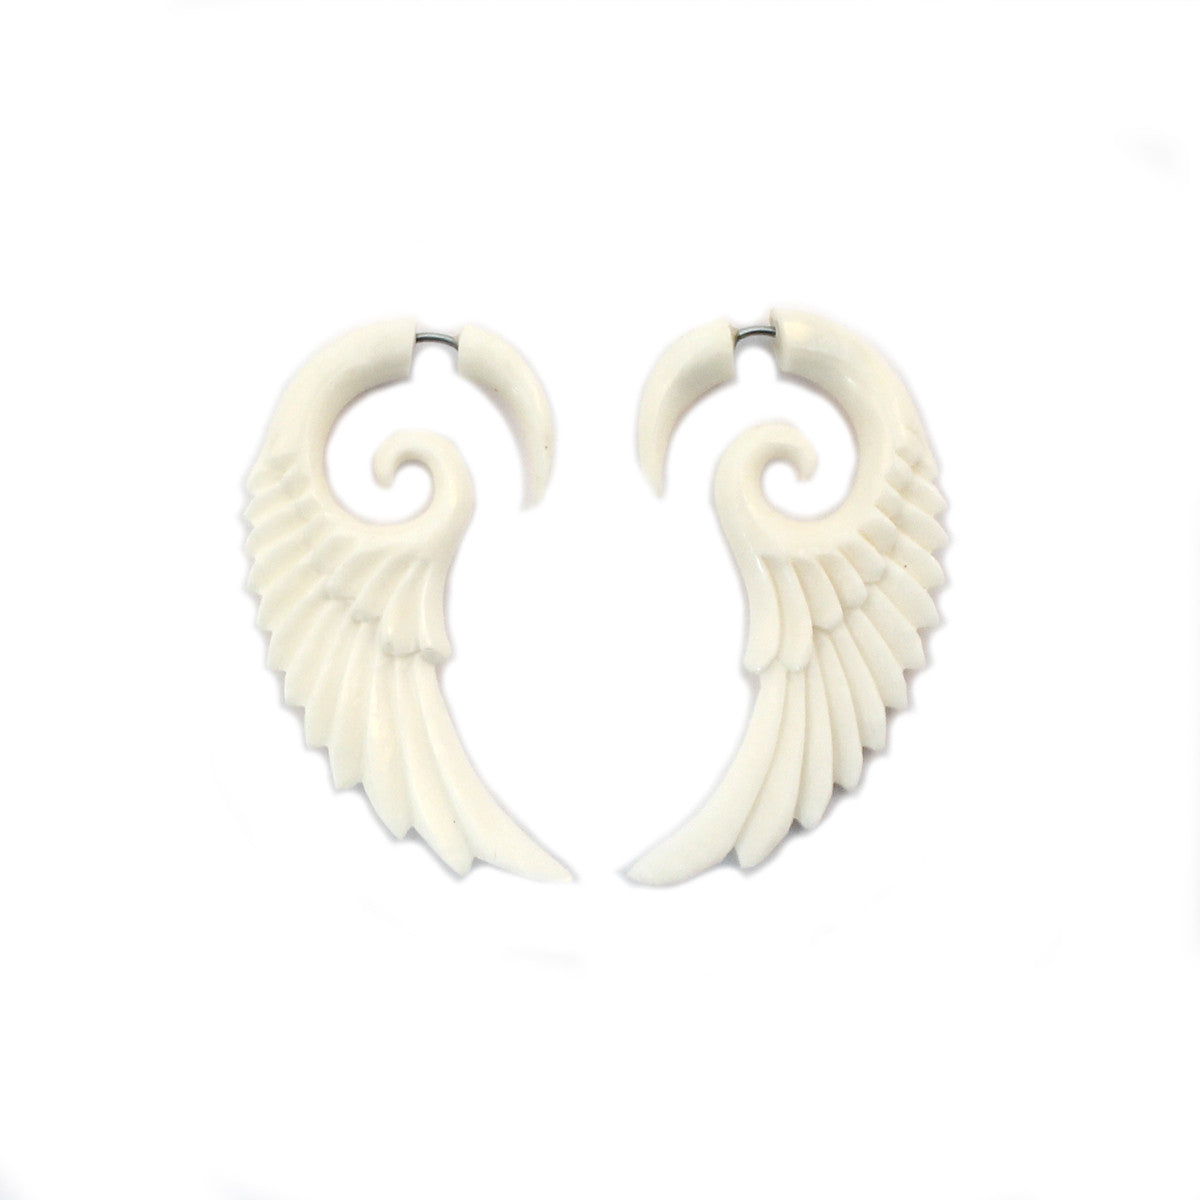 Carved Bone Earrings - Wings